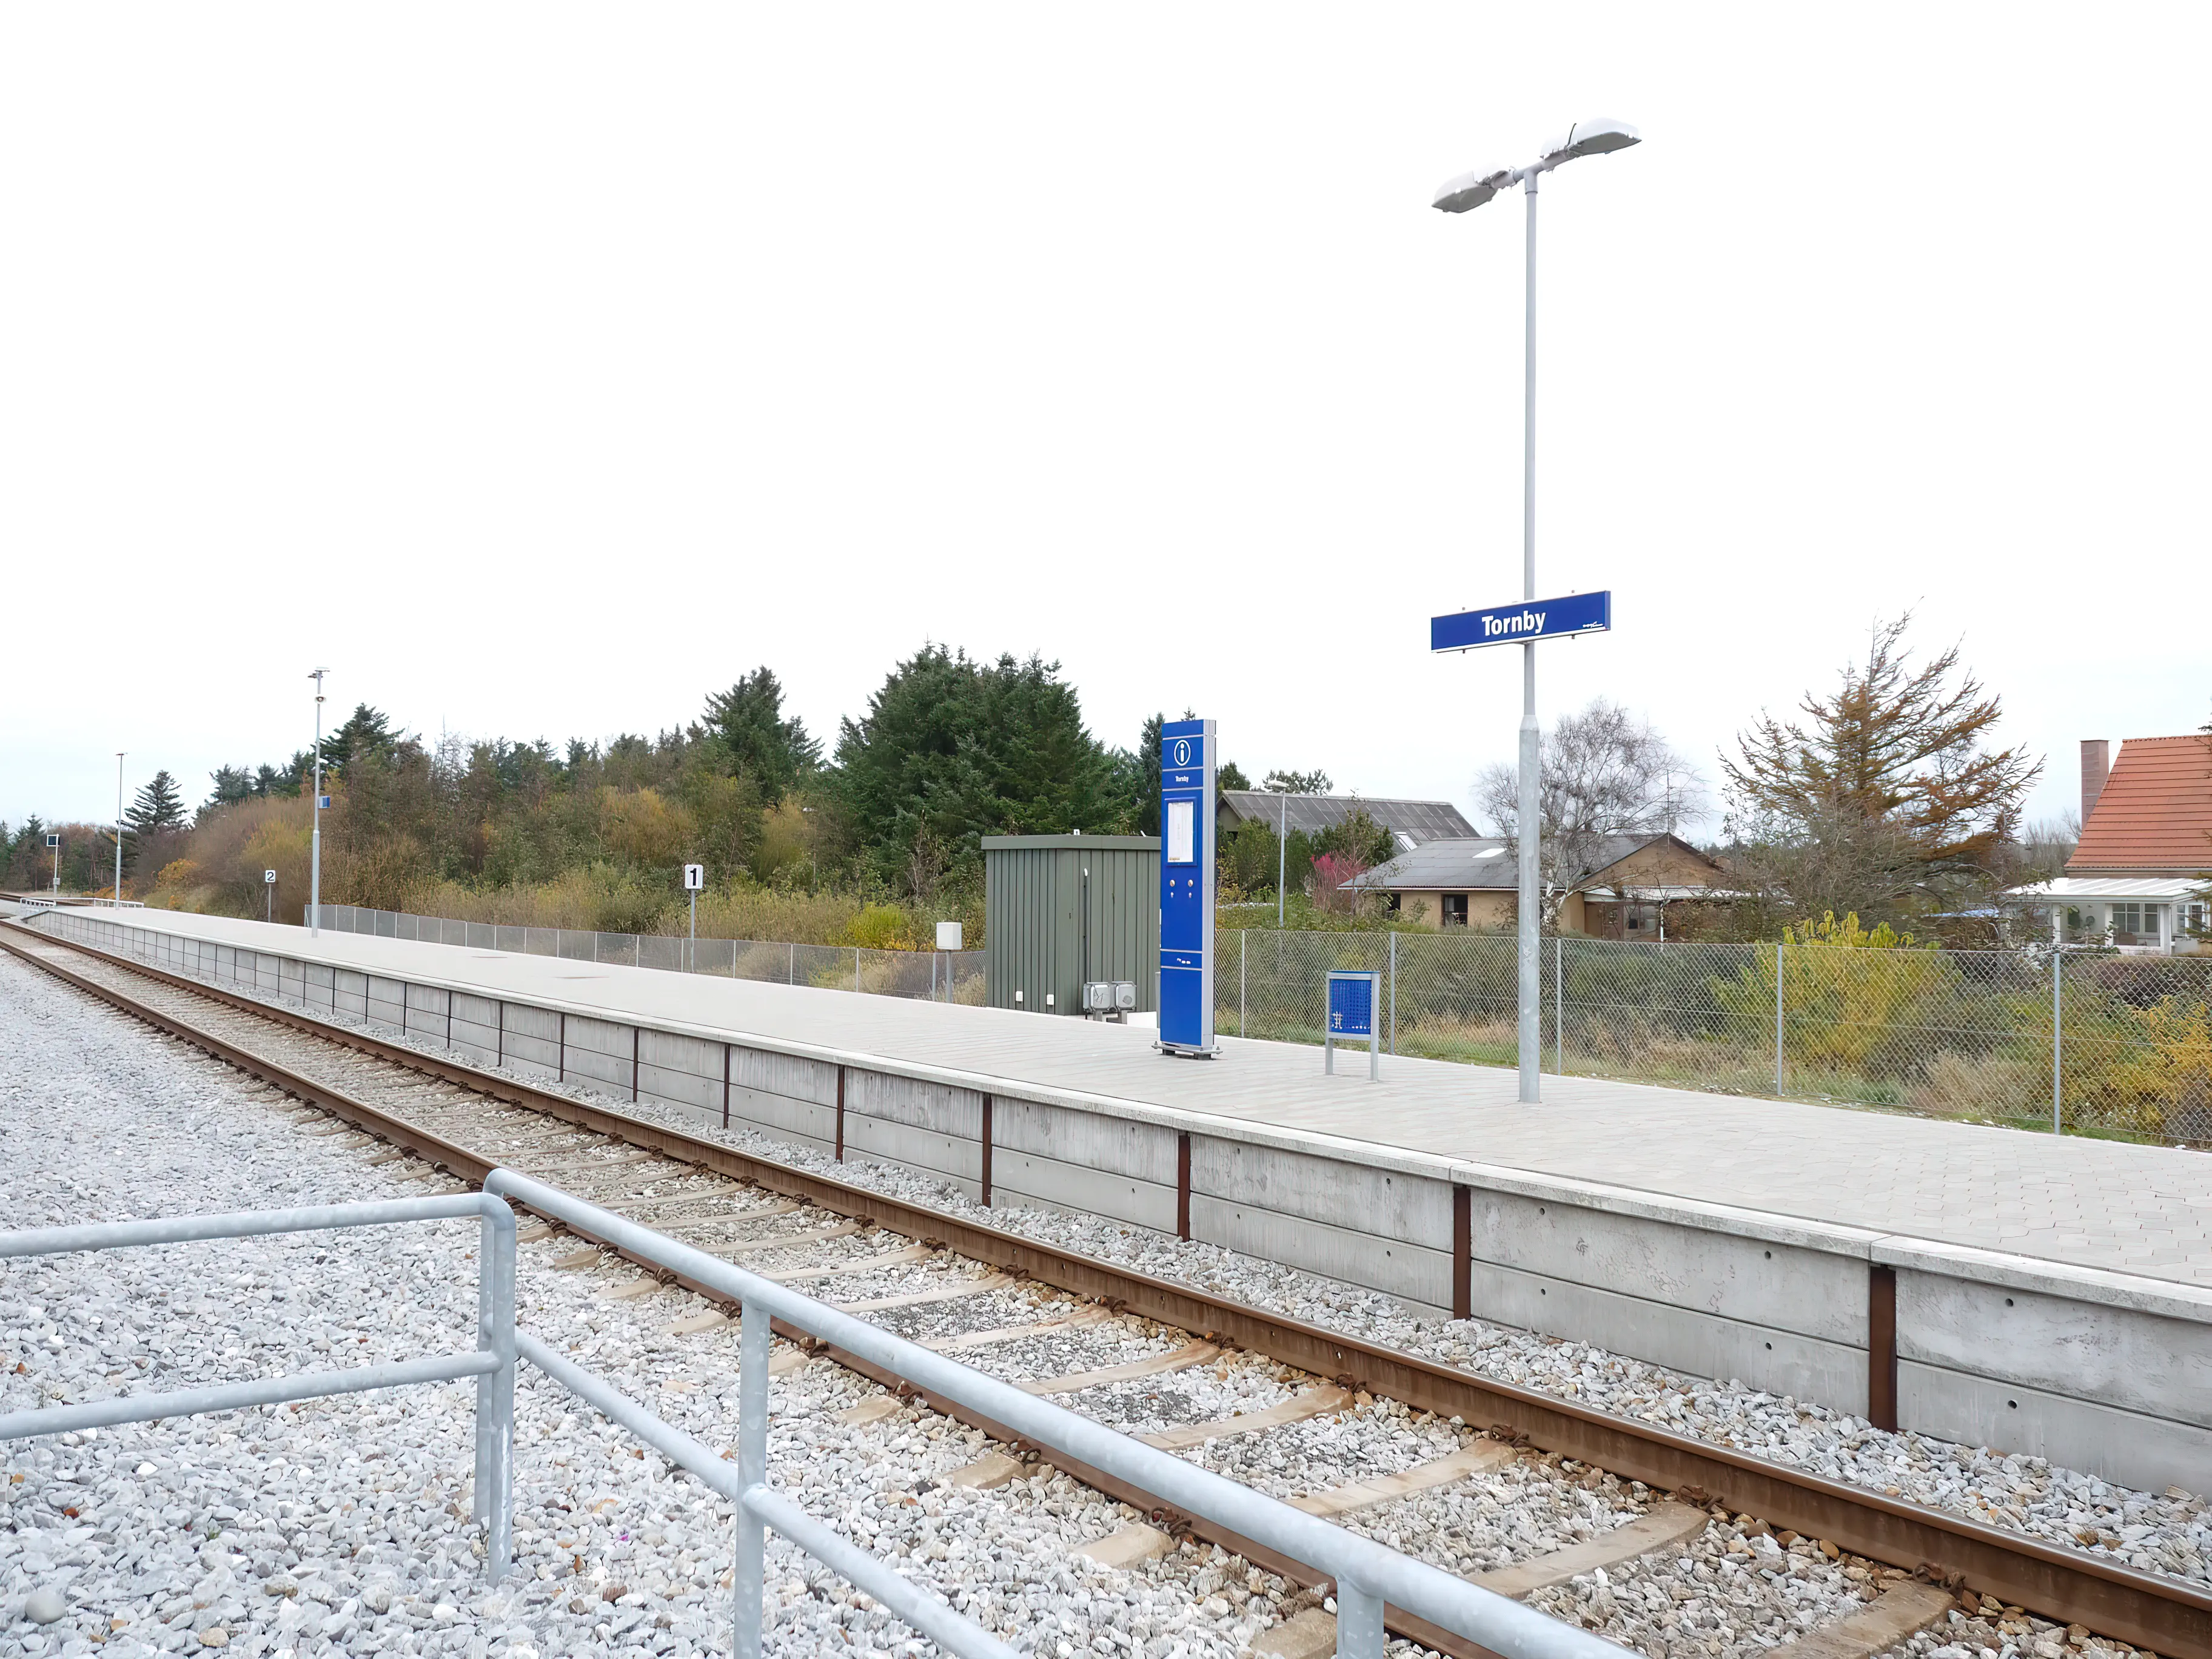 Billede af Tornby Station.